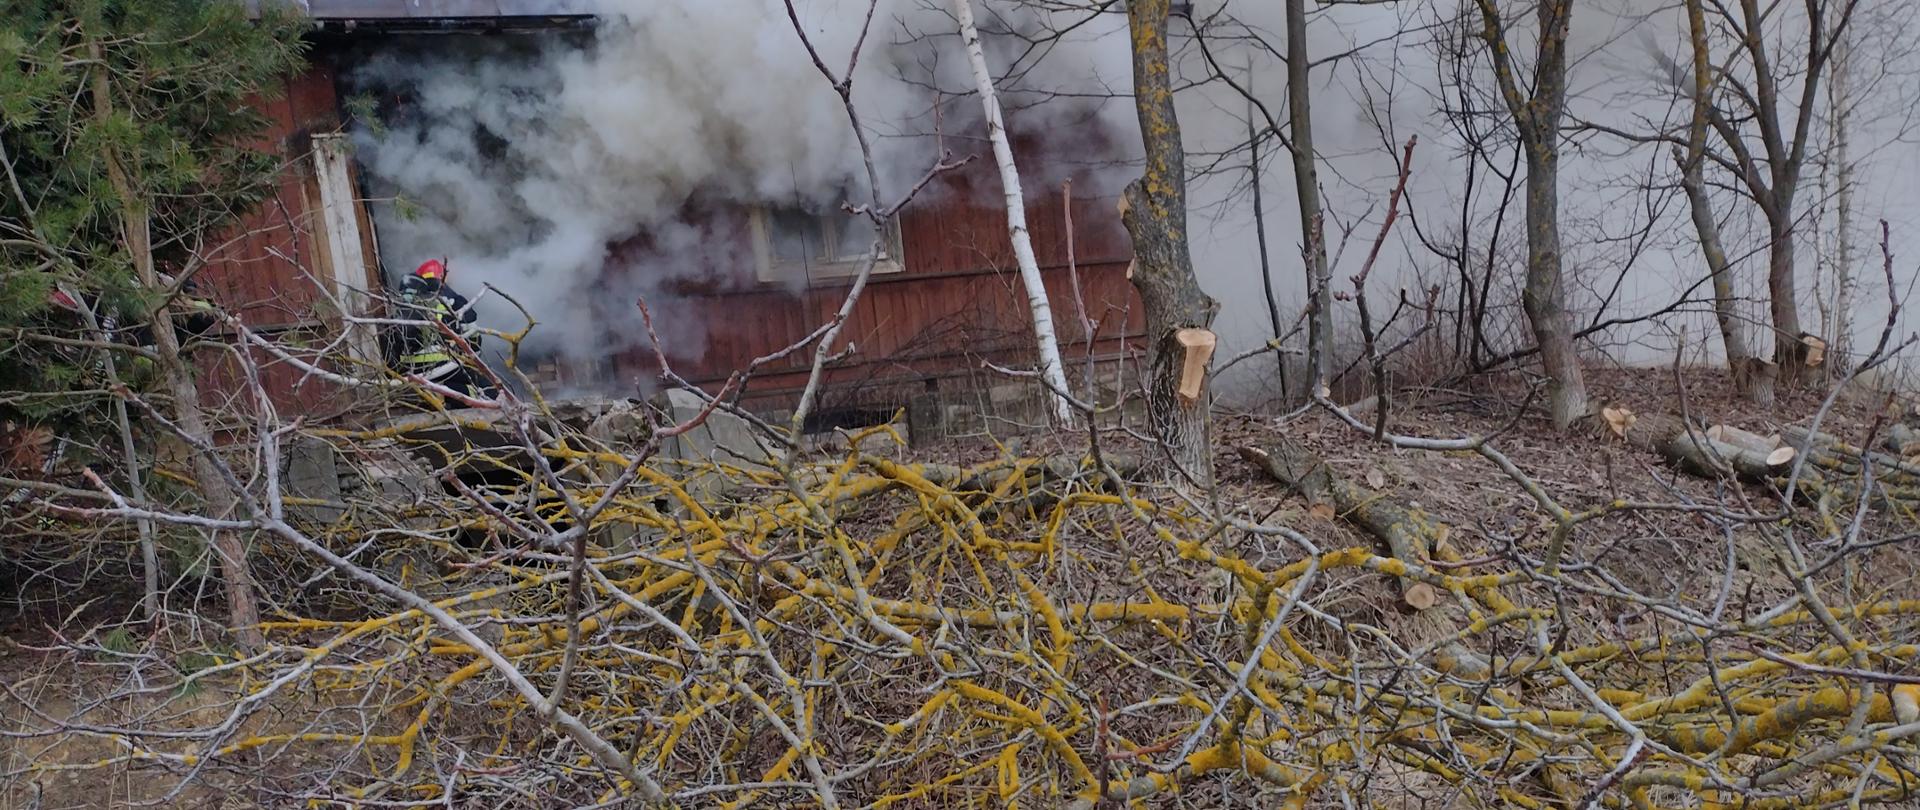 Na zdjęciu widzimy palący się budynek mieszkalny, wydobywające się z niego duże ilości dymu oraz strażaka podczas działań gaśniczych.